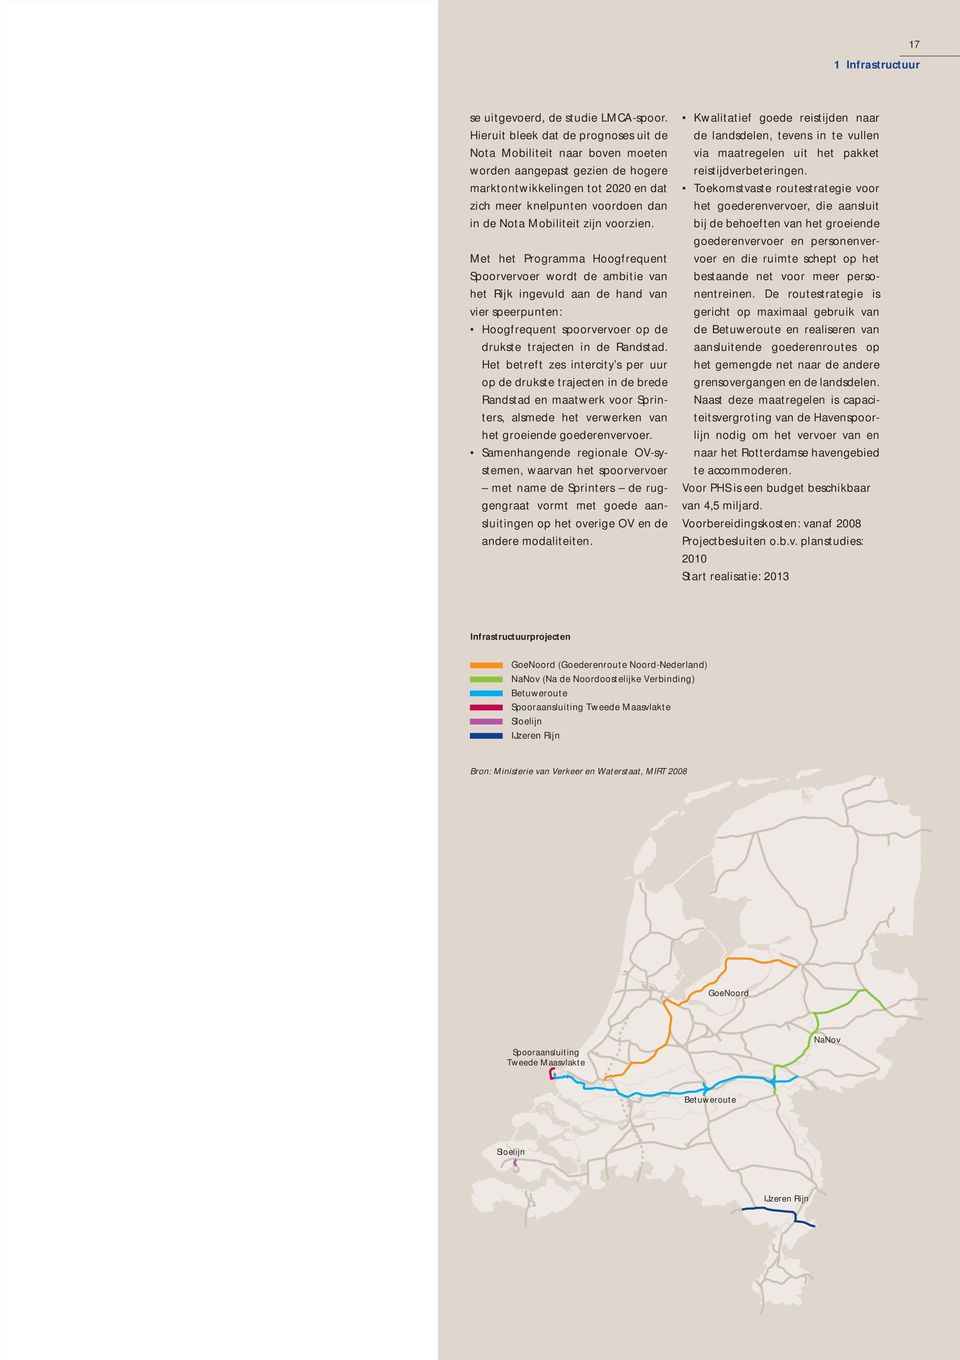 zijn voorzien. Met het Programma Hoogfrequent Spoorvervoer wordt de ambitie van het Rijk ingevuld aan de hand van vier speerpunten: Hoogfrequent spoorvervoer op de drukste trajecten in de Randstad.